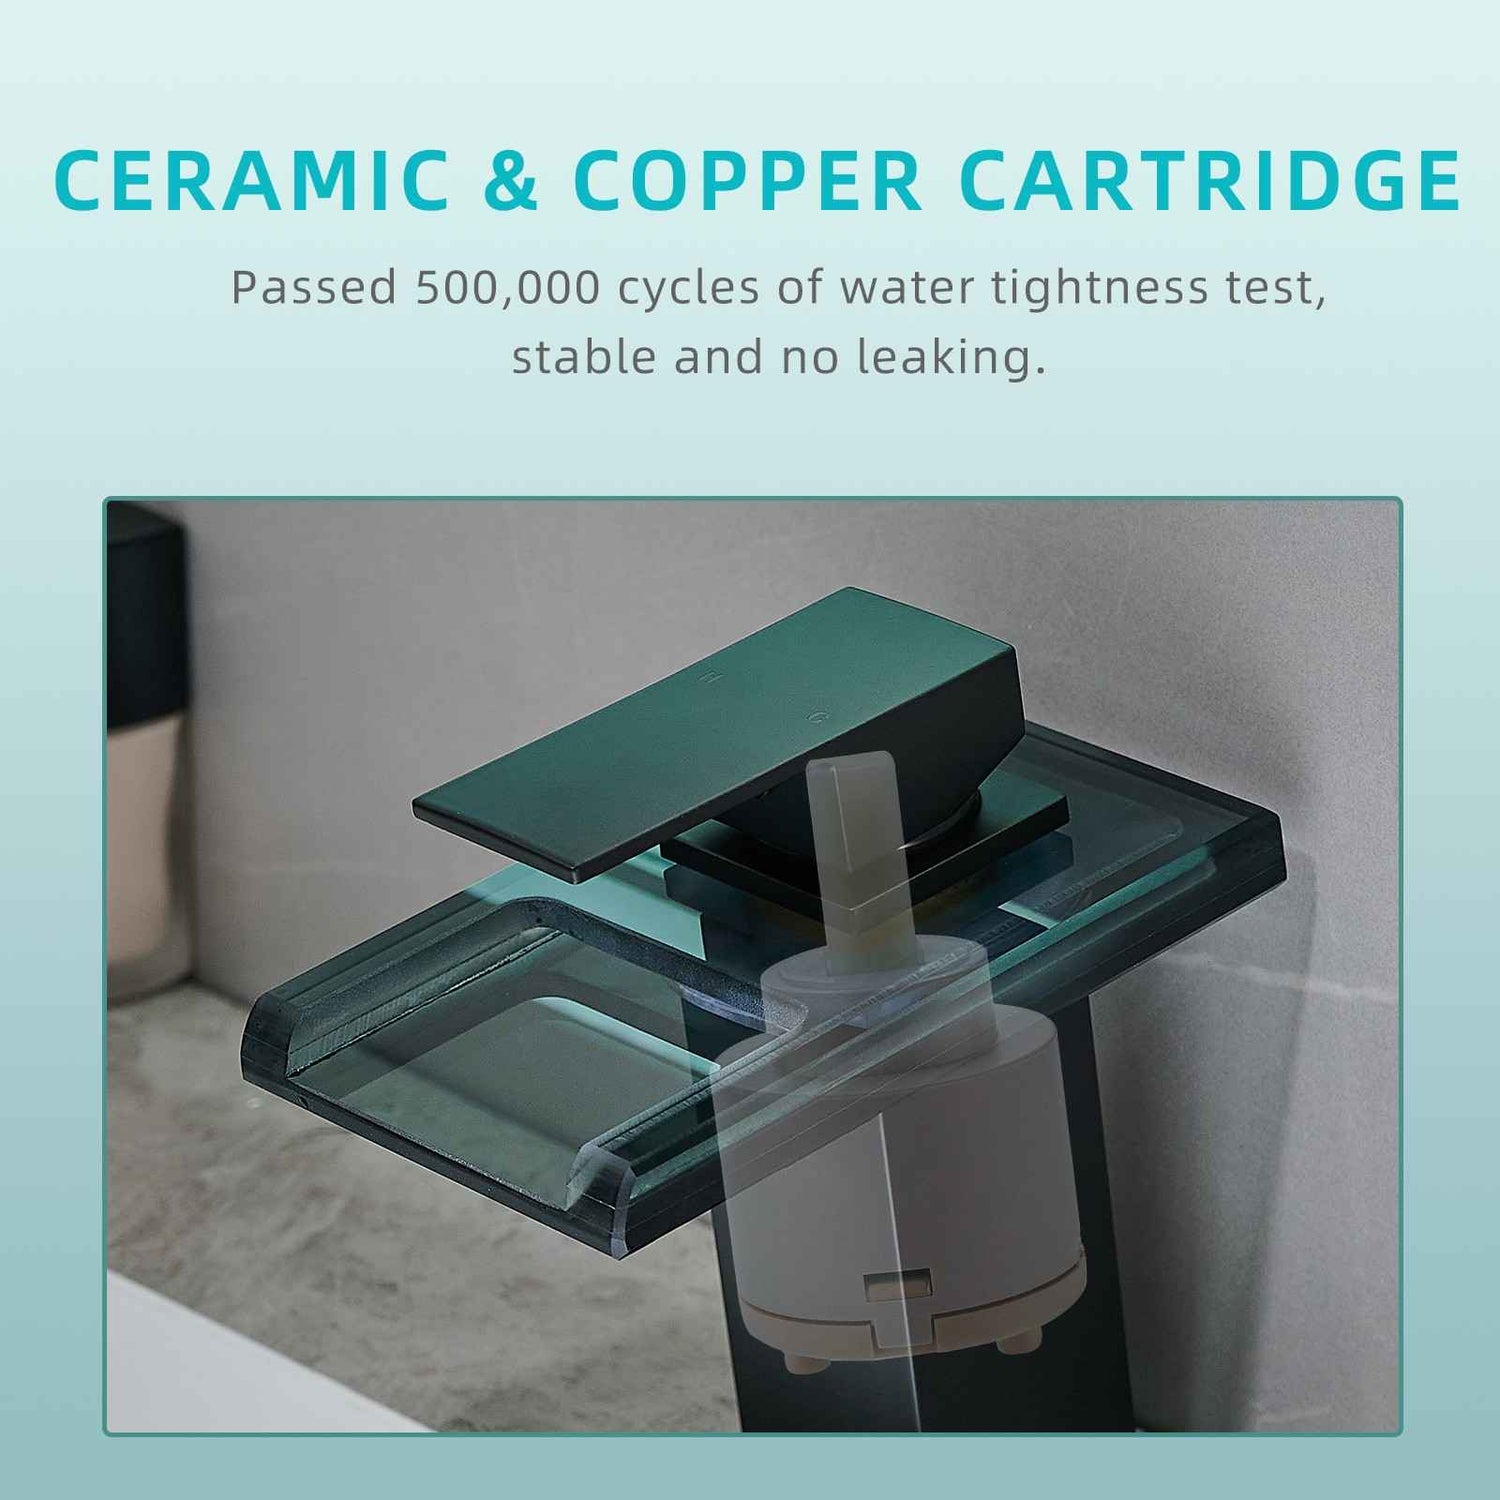 Ceramic and copper cartridge faucet